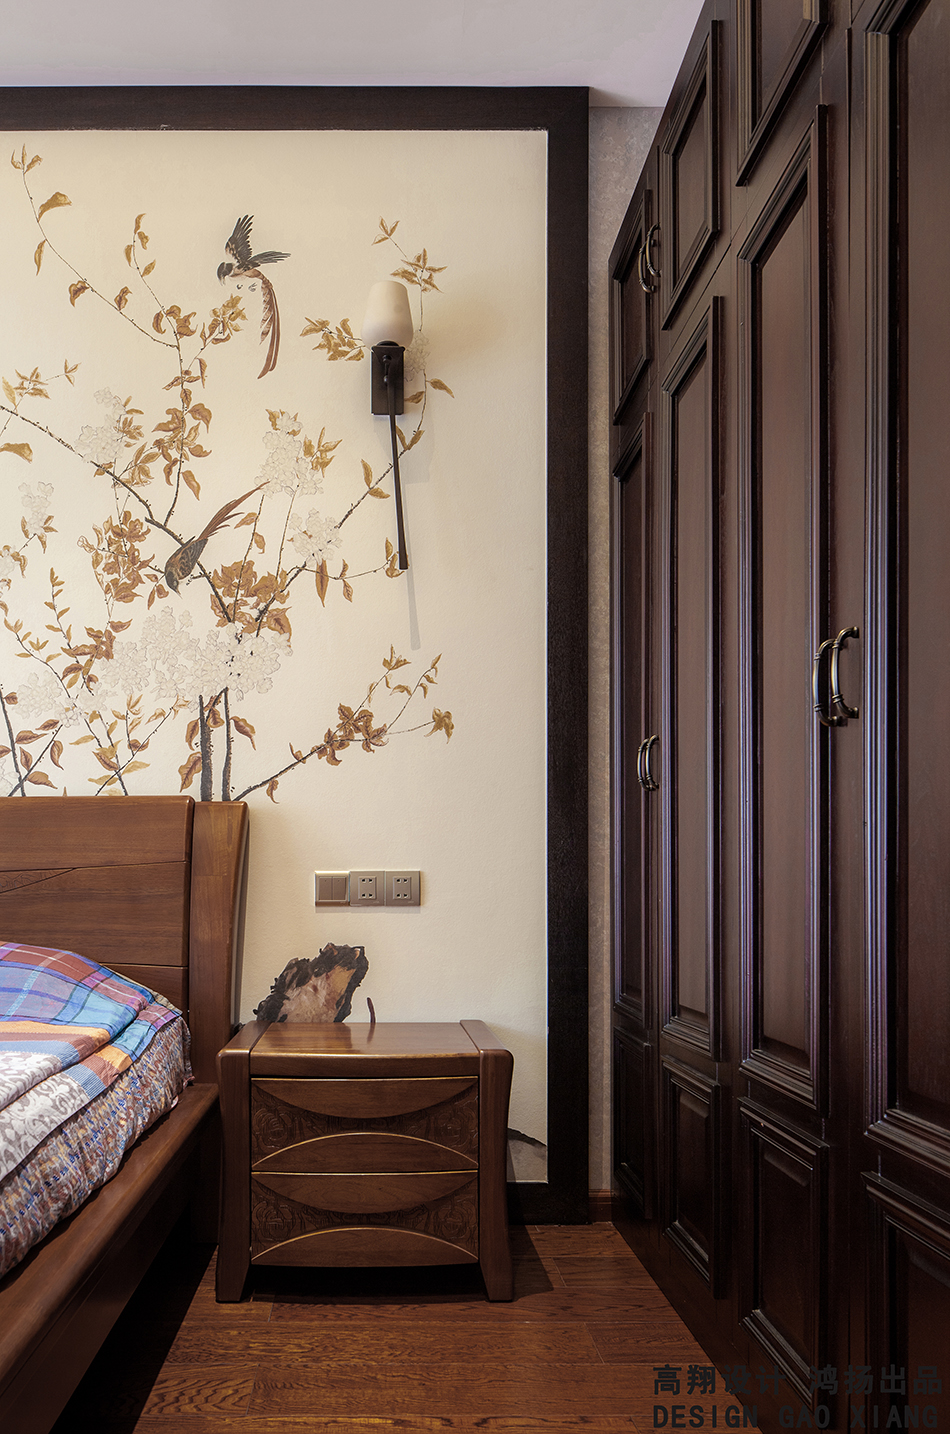 新中式 高大上 高品质 古典气息 卧室图片来自鸿扬家装武汉分公司在文士雅风之复合写意系列的分享